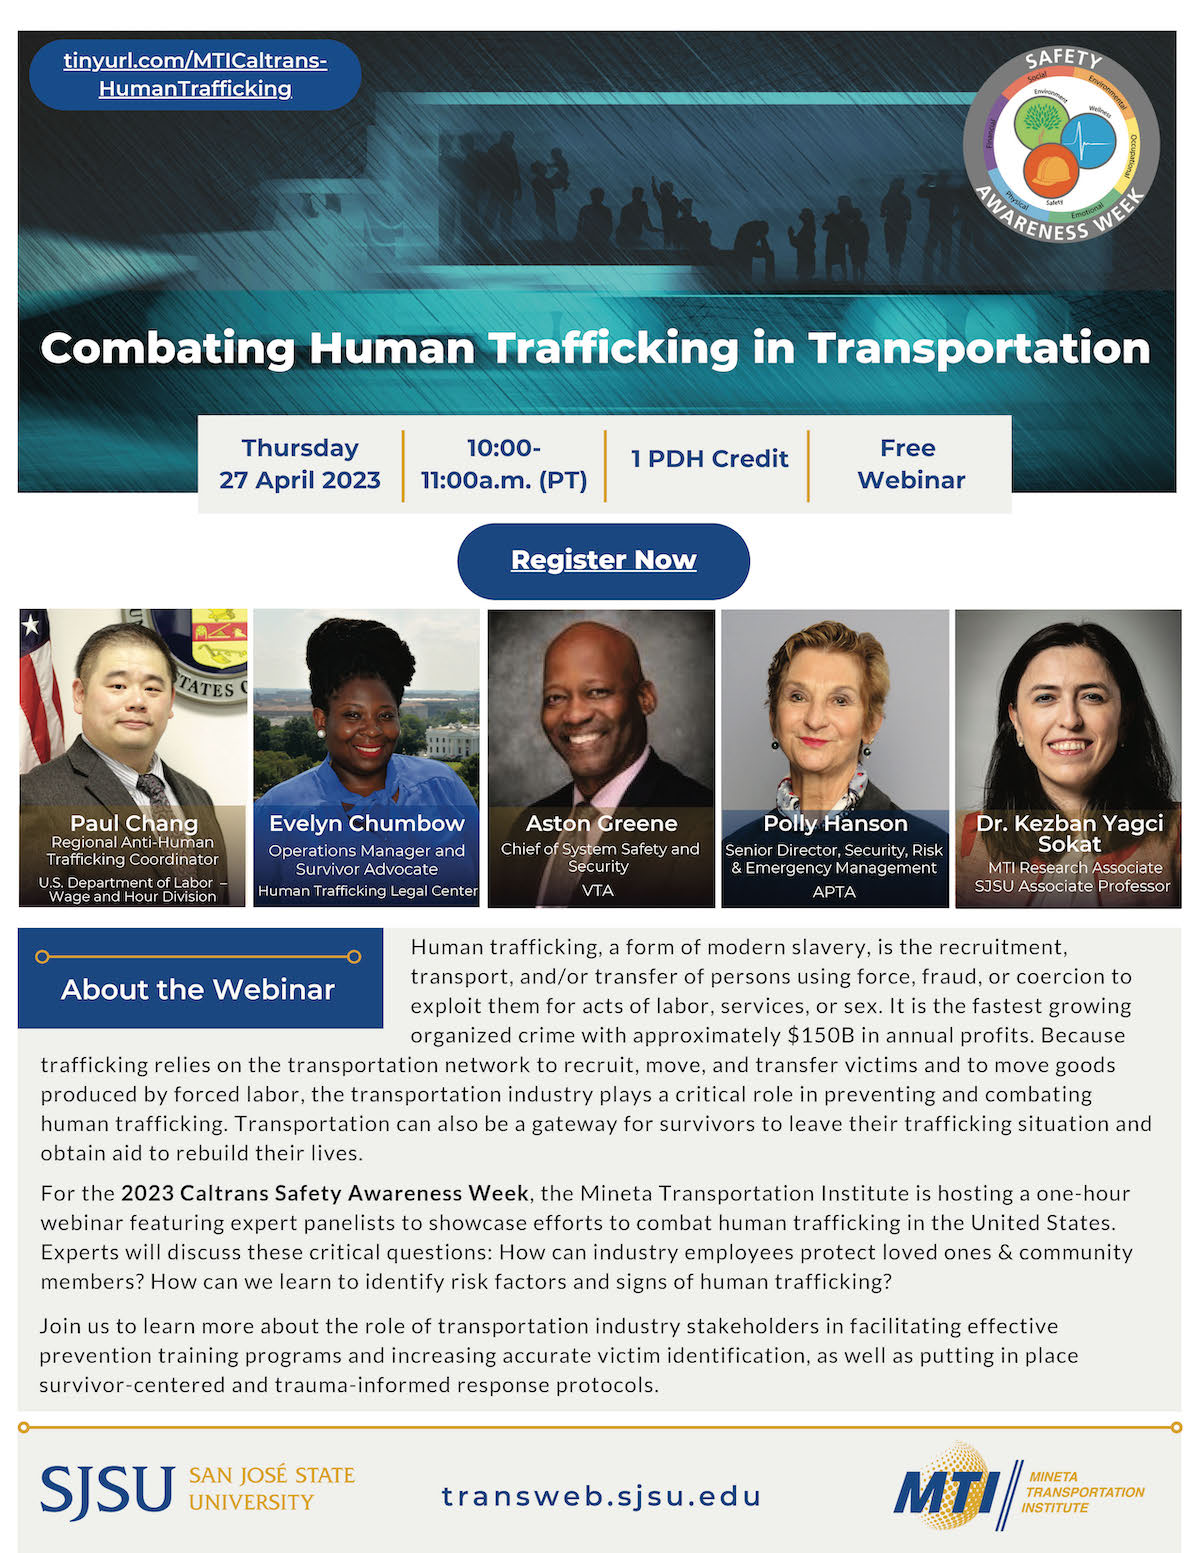 Combating Human Trafficking In Transportation 2023 Caltrans Safety Awareness Week Mineta 3089